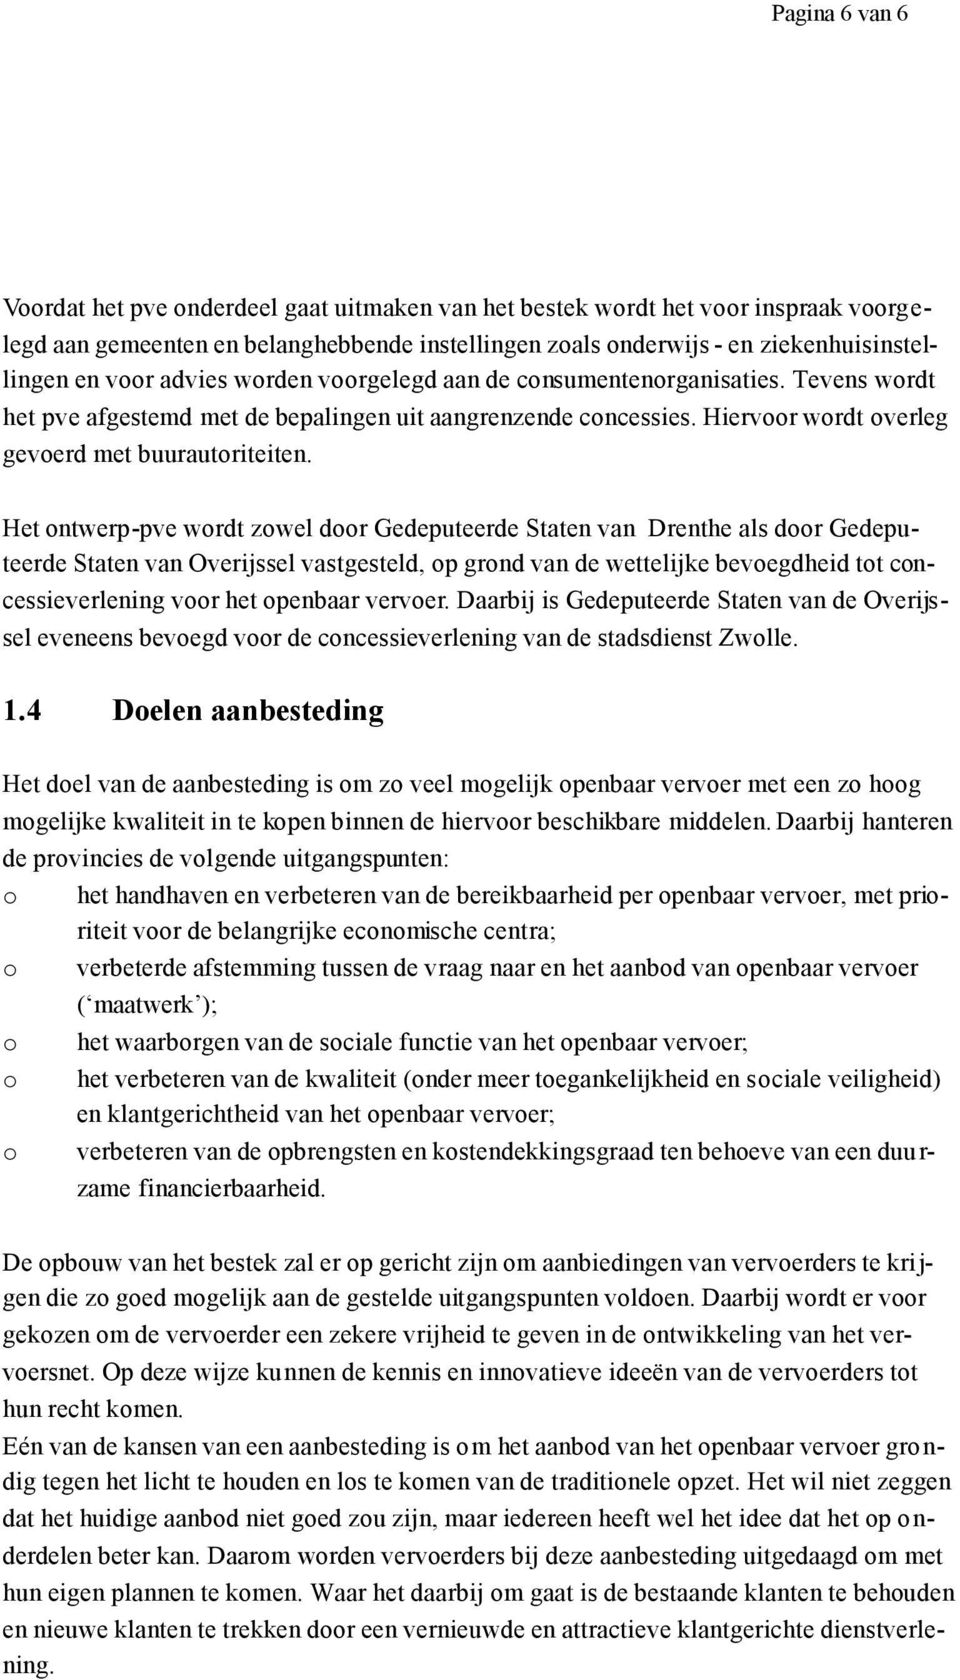 Het ontwerp-pve wordt zowel door Gedeputeerde Staten van Drenthe als door Gedeputeerde Staten van Overijssel vastgesteld, op grond van de wettelijke bevoegdheid tot concessieverlening voor het